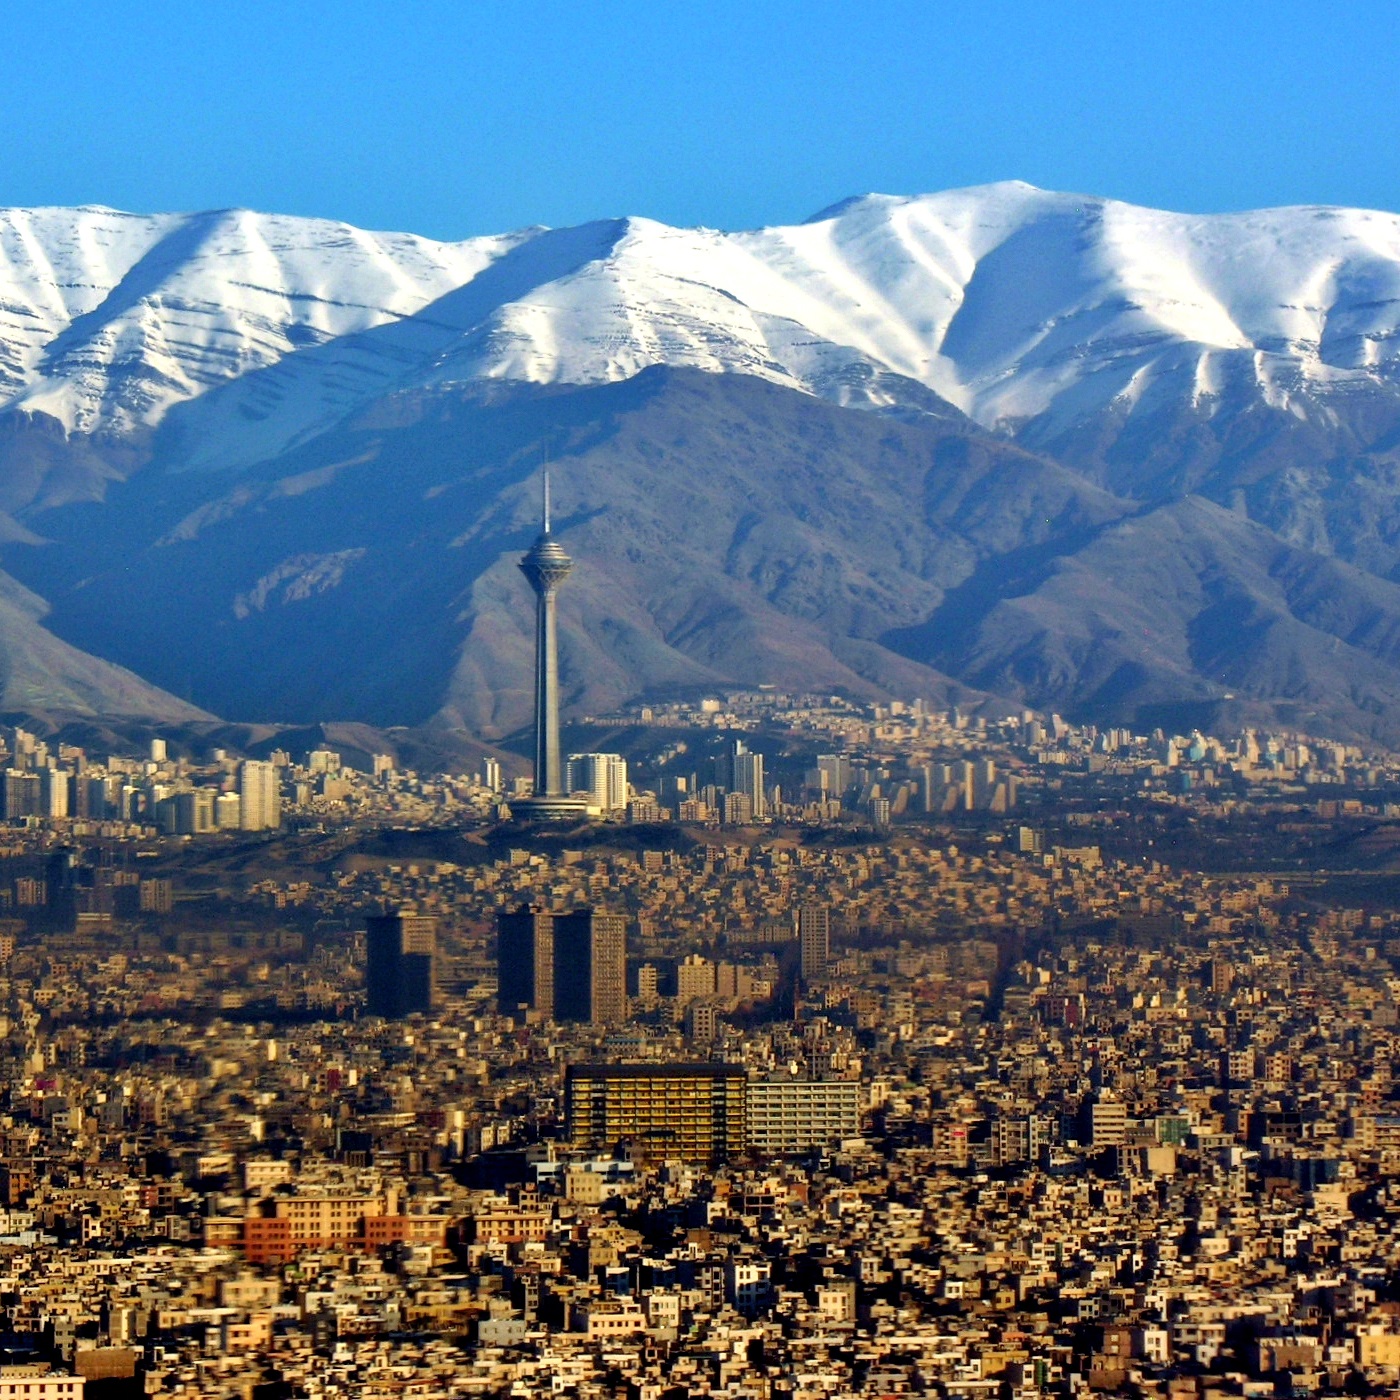 原创背靠大山,面朝沙漠,伊朗首都德黑兰战略位置如何?